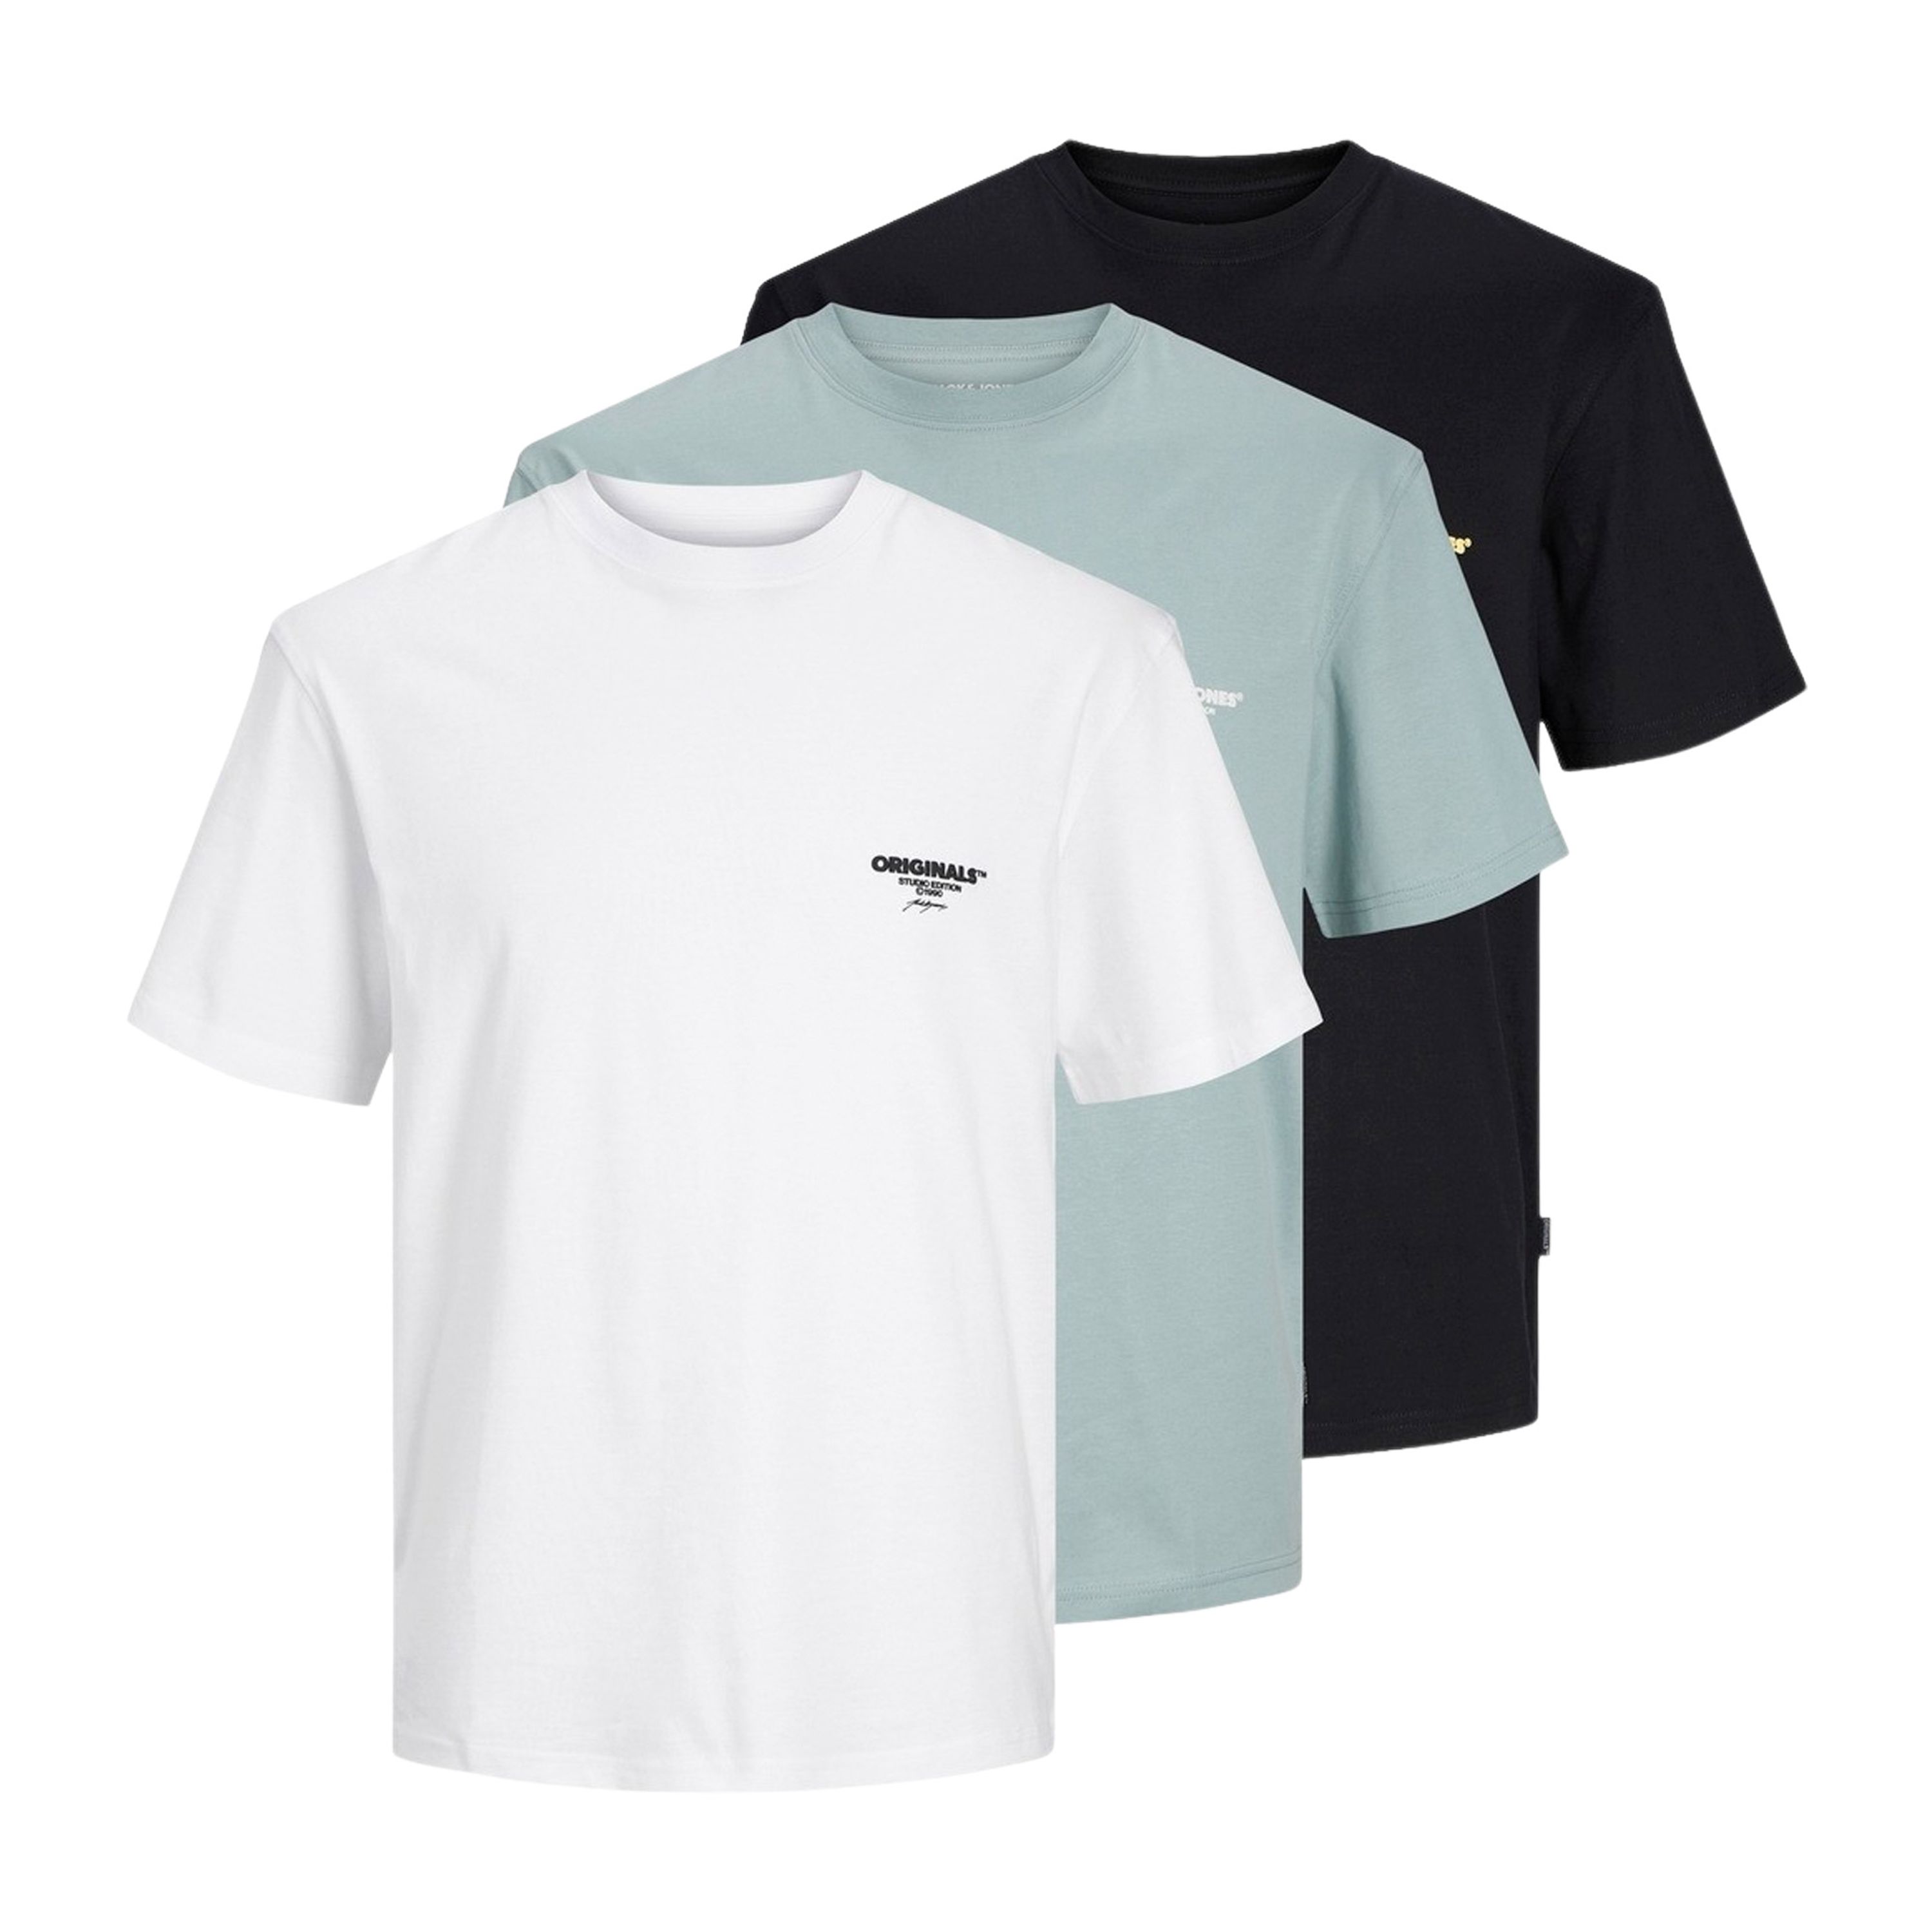 Jack & jones Originals Bora Branding Shirts Heren (3-pack)